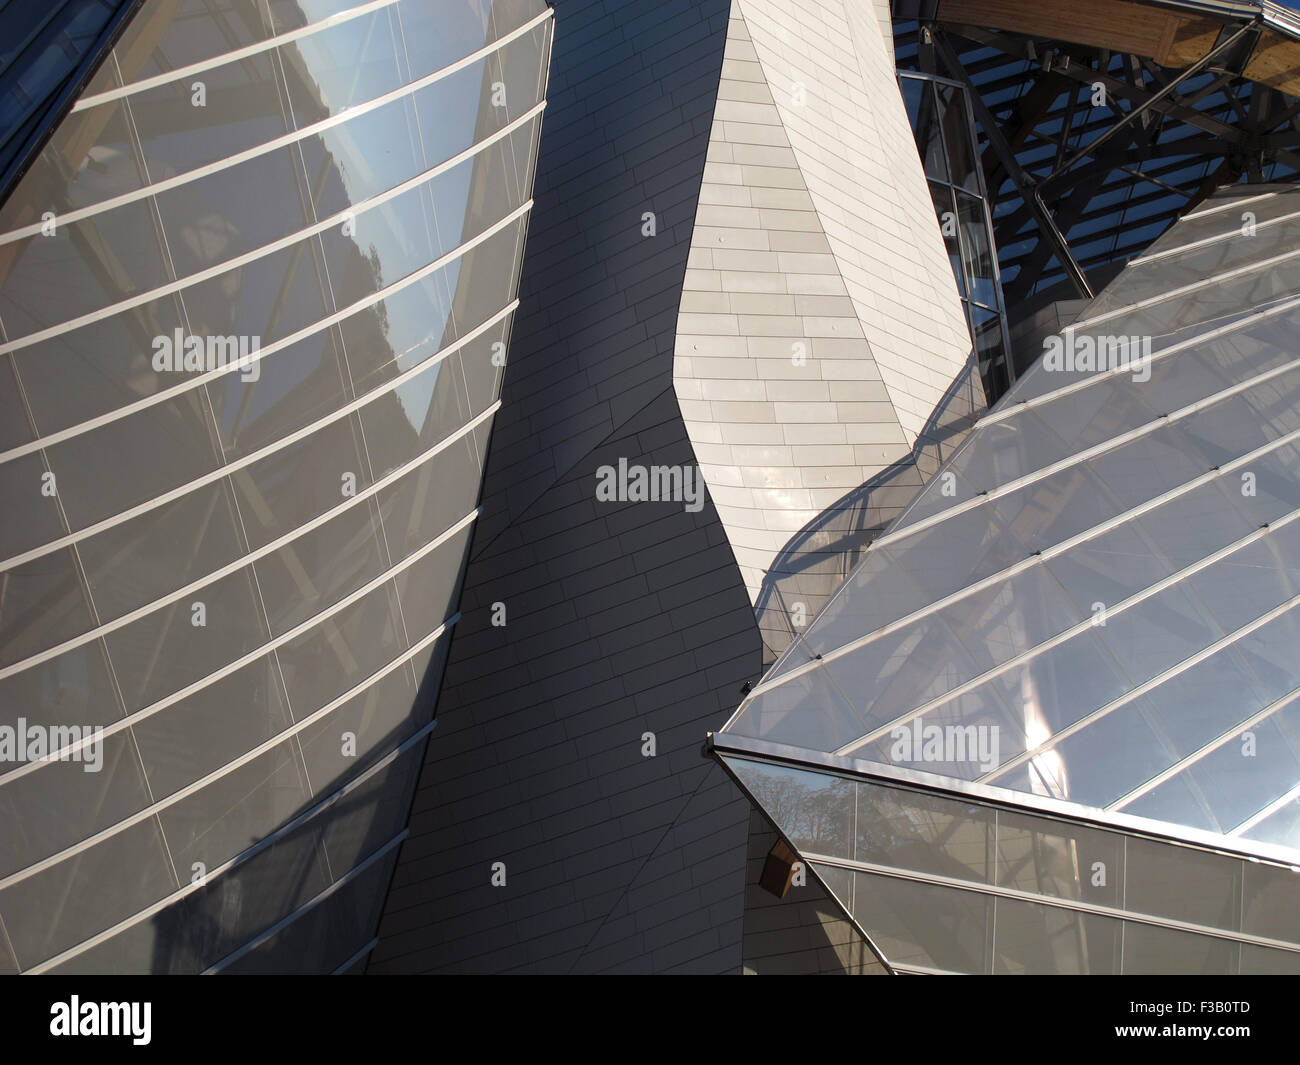 Fondation Louis Vuitton,Frank Gehry architect,Paris,France, Stock Photo